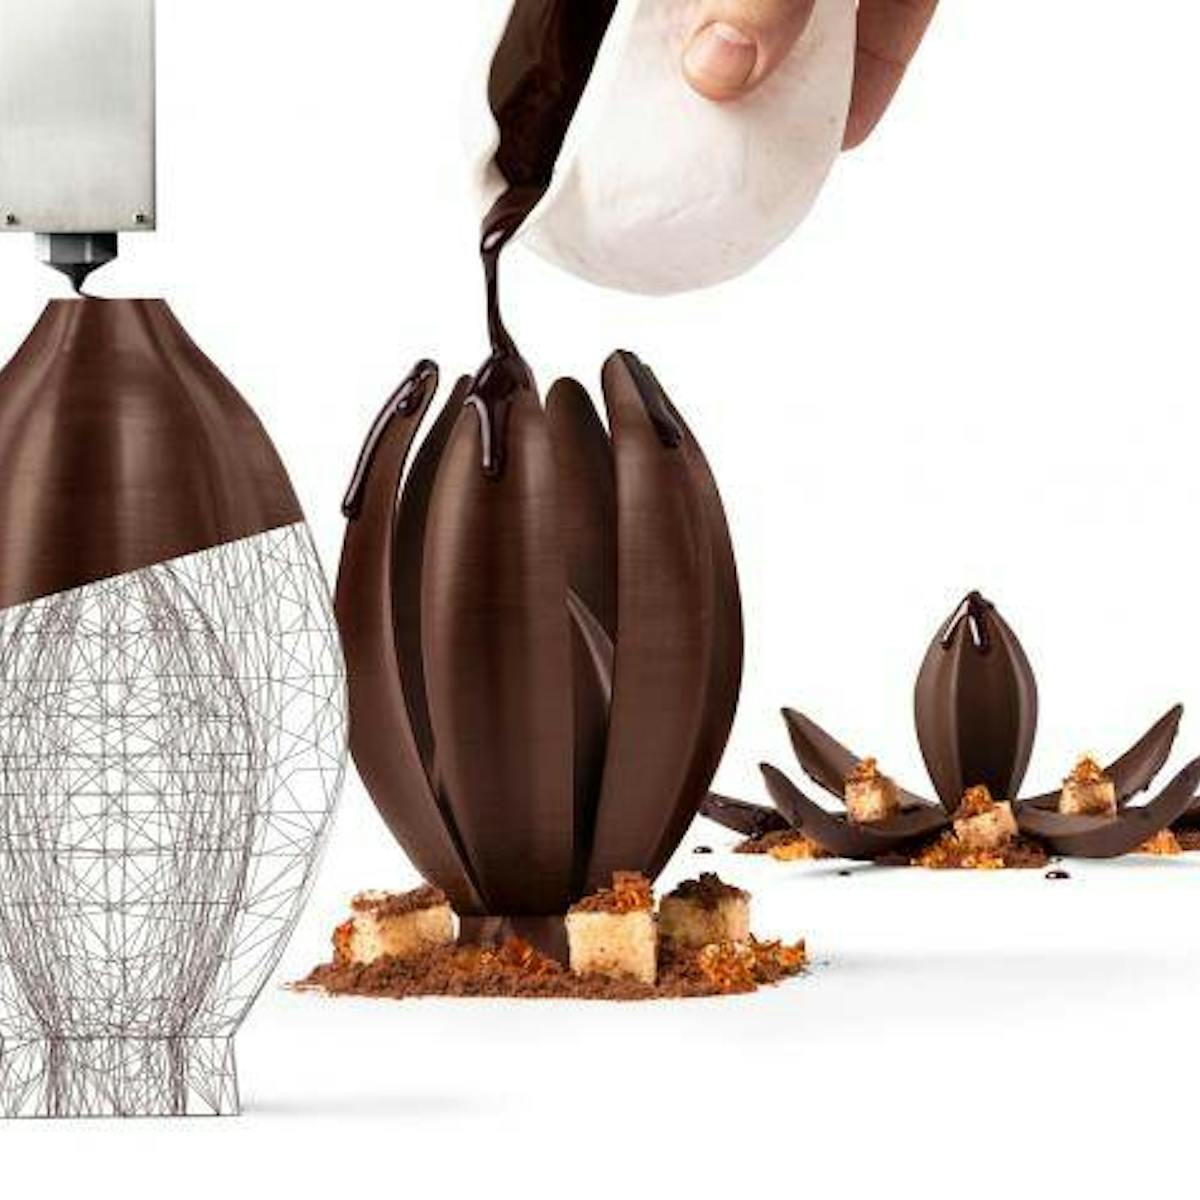 Jordi Roca&apos;s Flor de Cacao creation